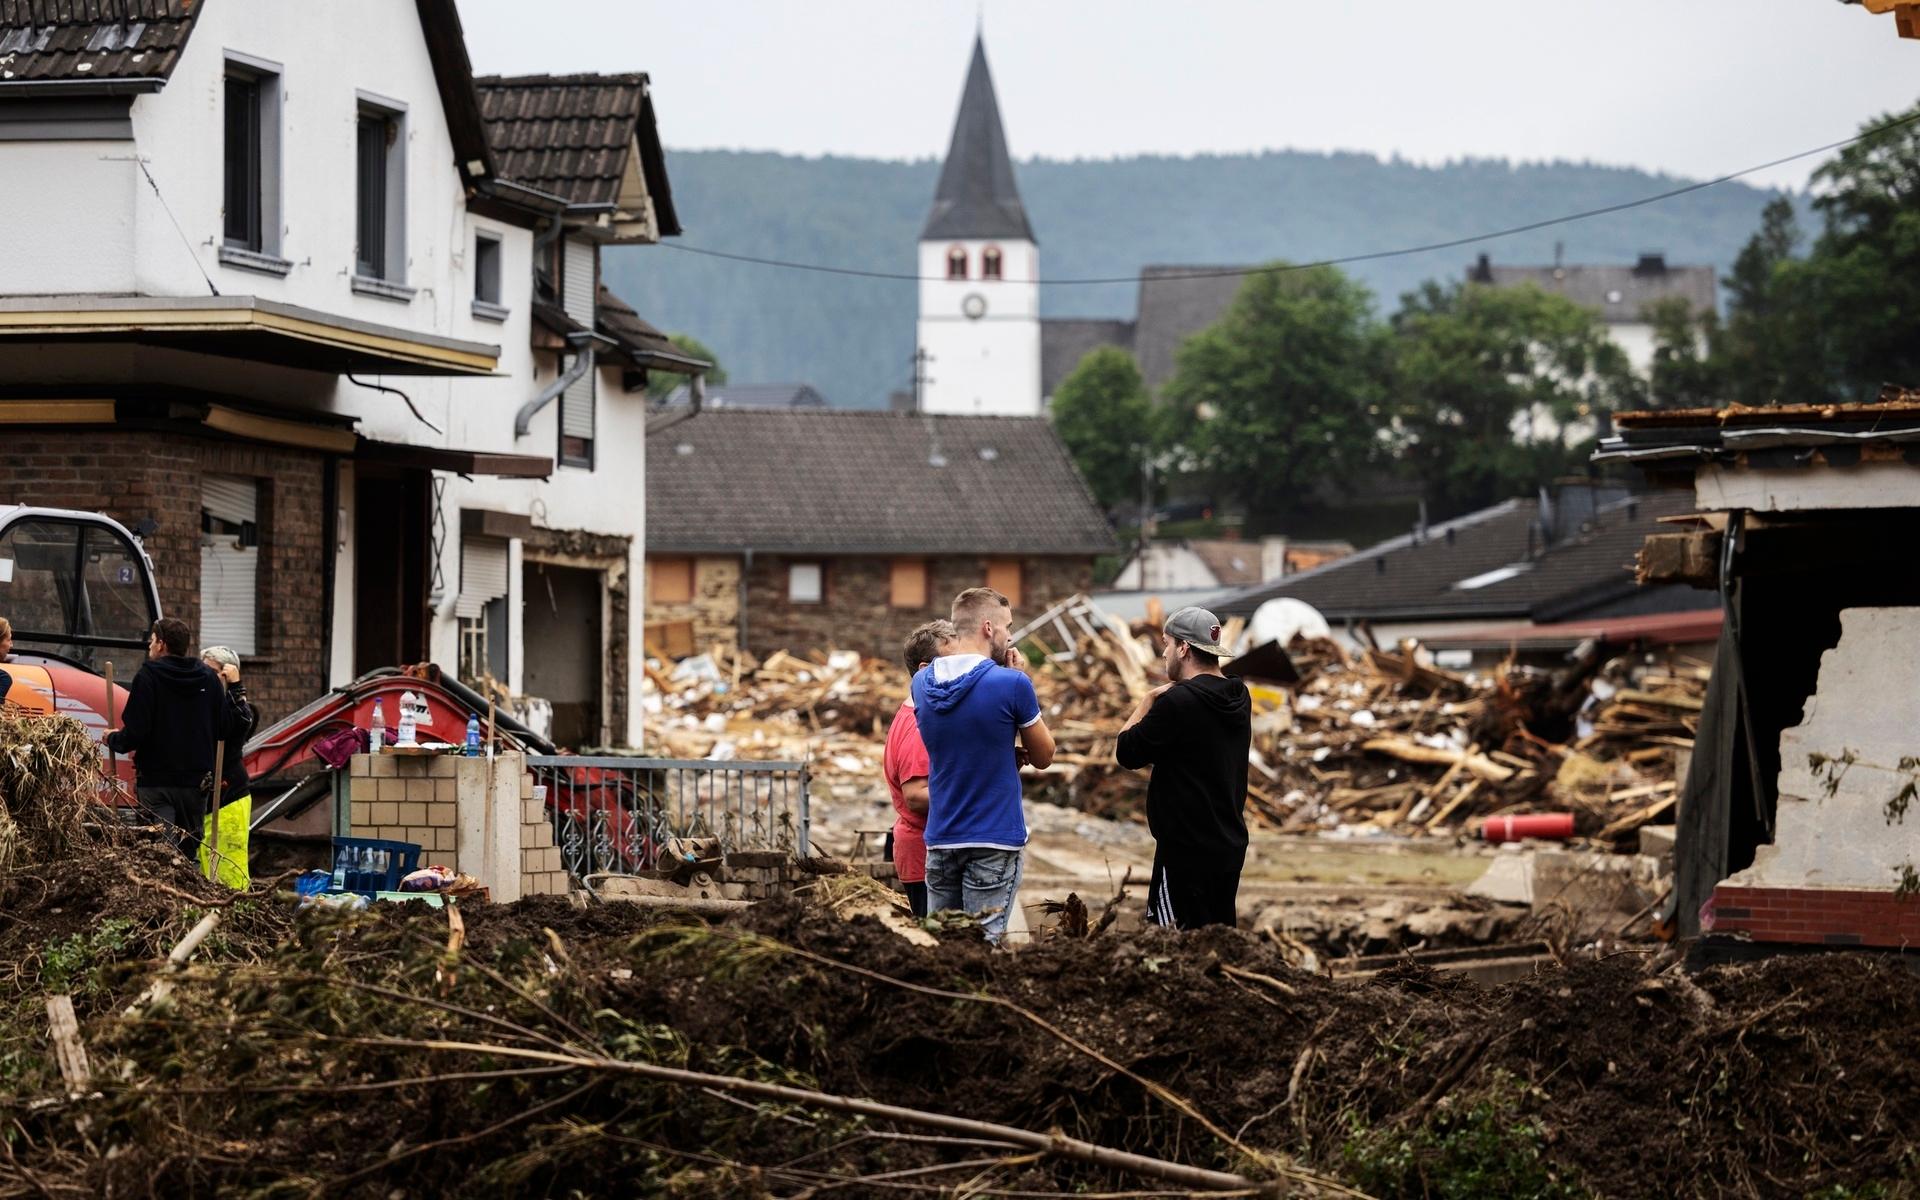 SCHULD 2021-07-16Förödelse i byn Schuld i västra Tyskland sedan stormen Bernd dragit förbi. I bild: Människor röjer upp i bråten. Foto: Nils Petter Nilsson